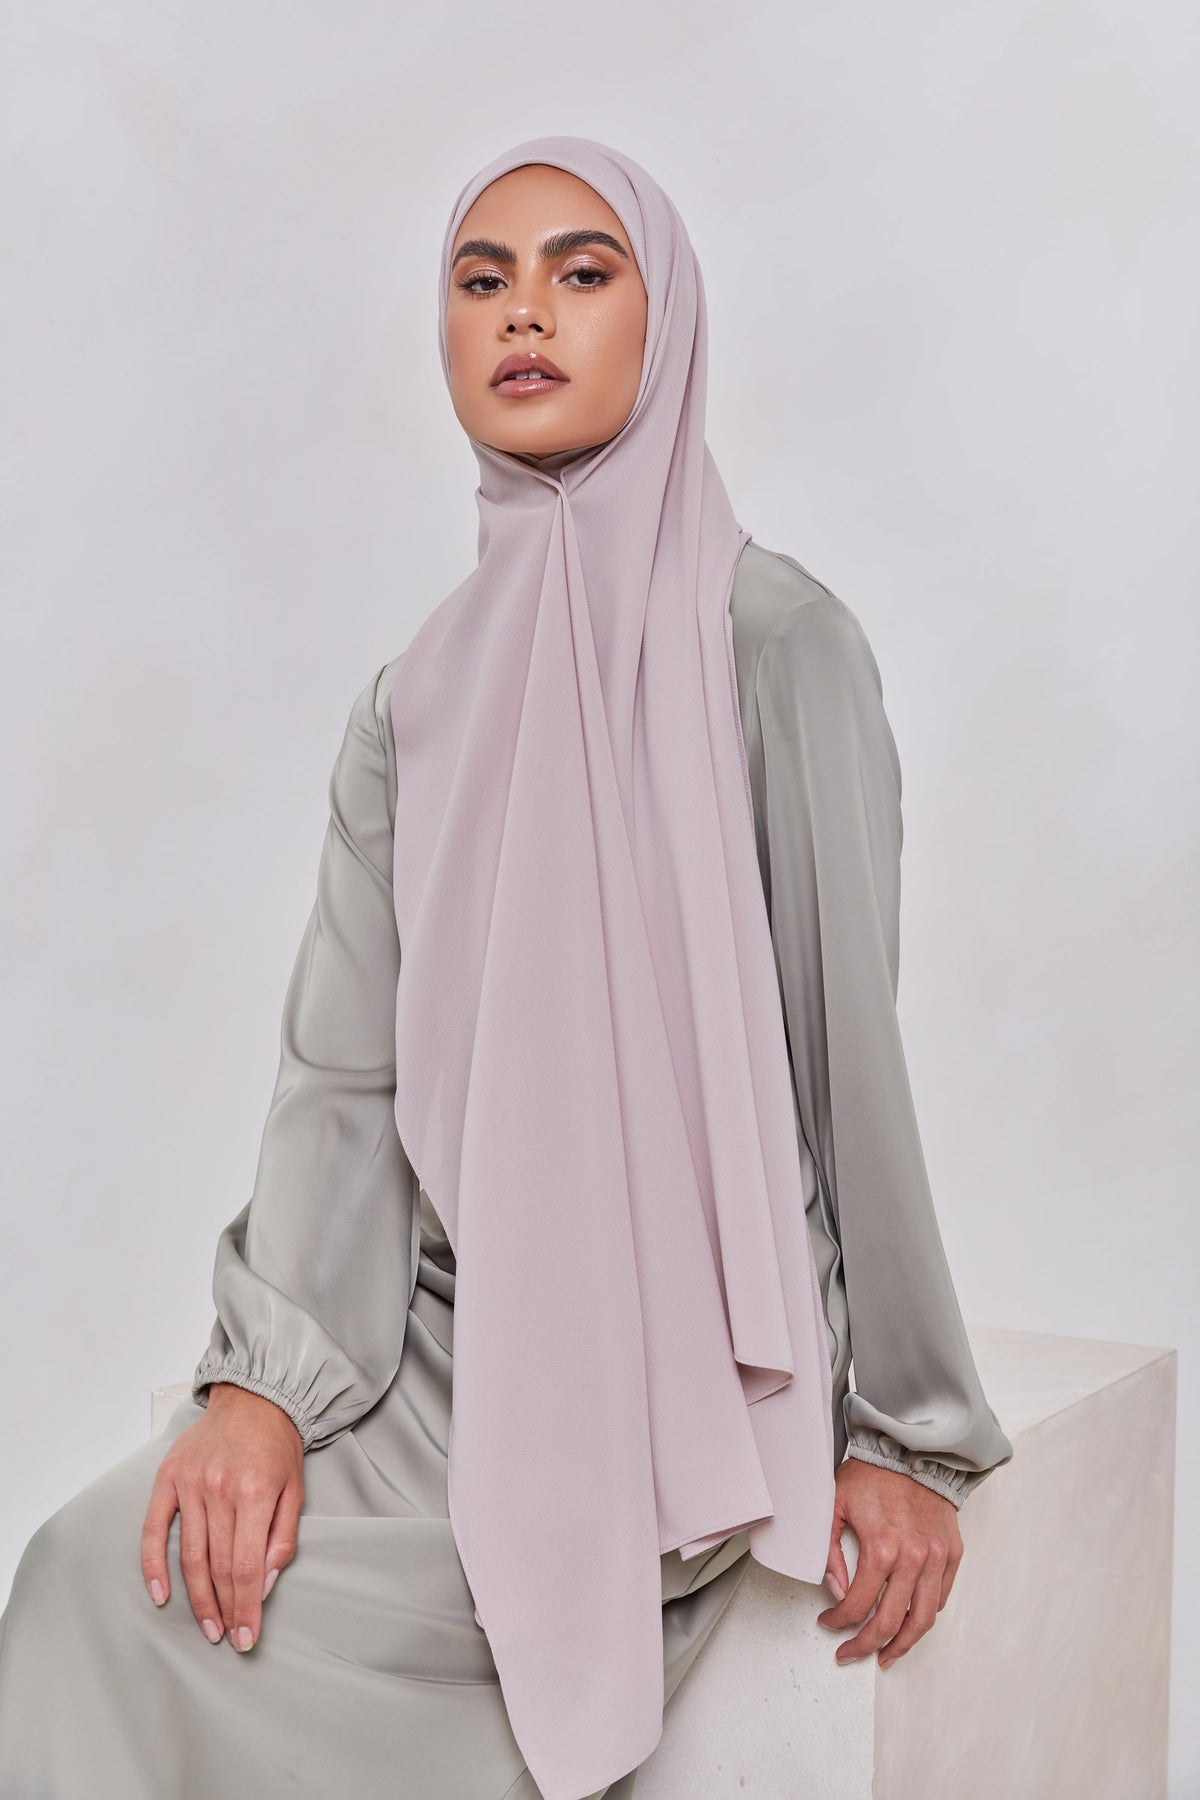 TEXTURE Twill Chiffon Hijab - Goals epschoolboard 